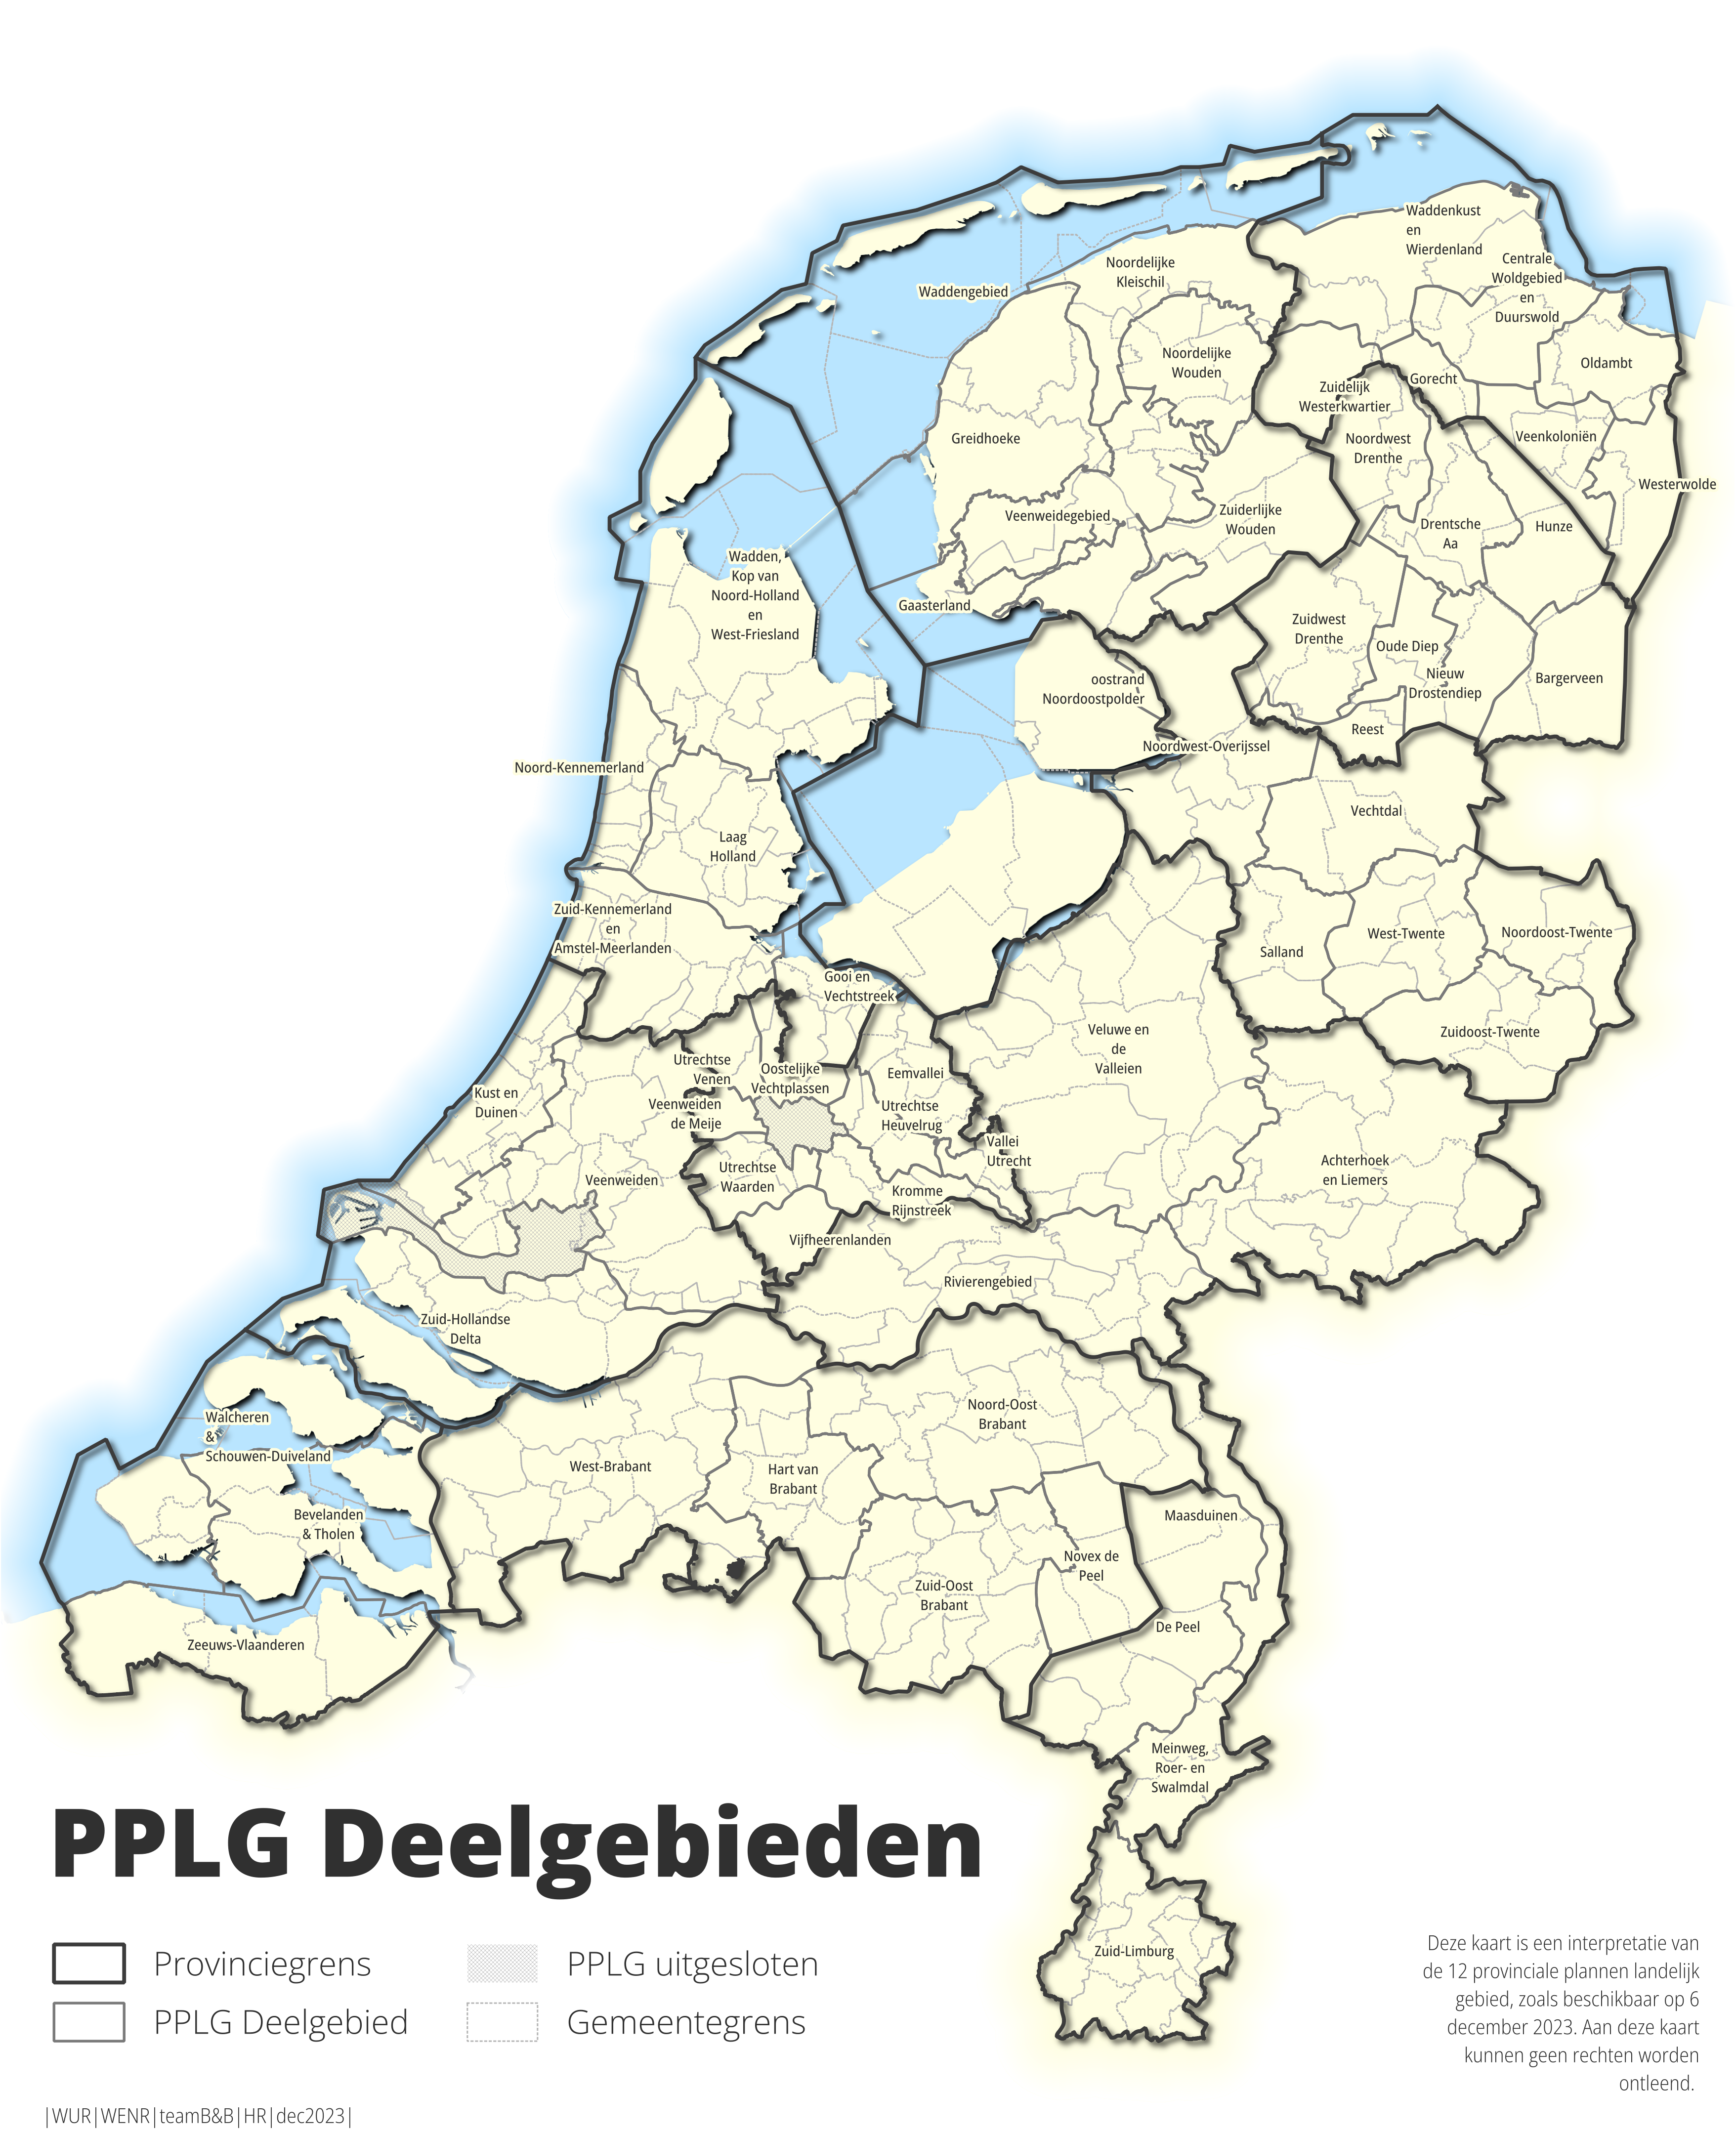 PPLG deelgebieden in WENR